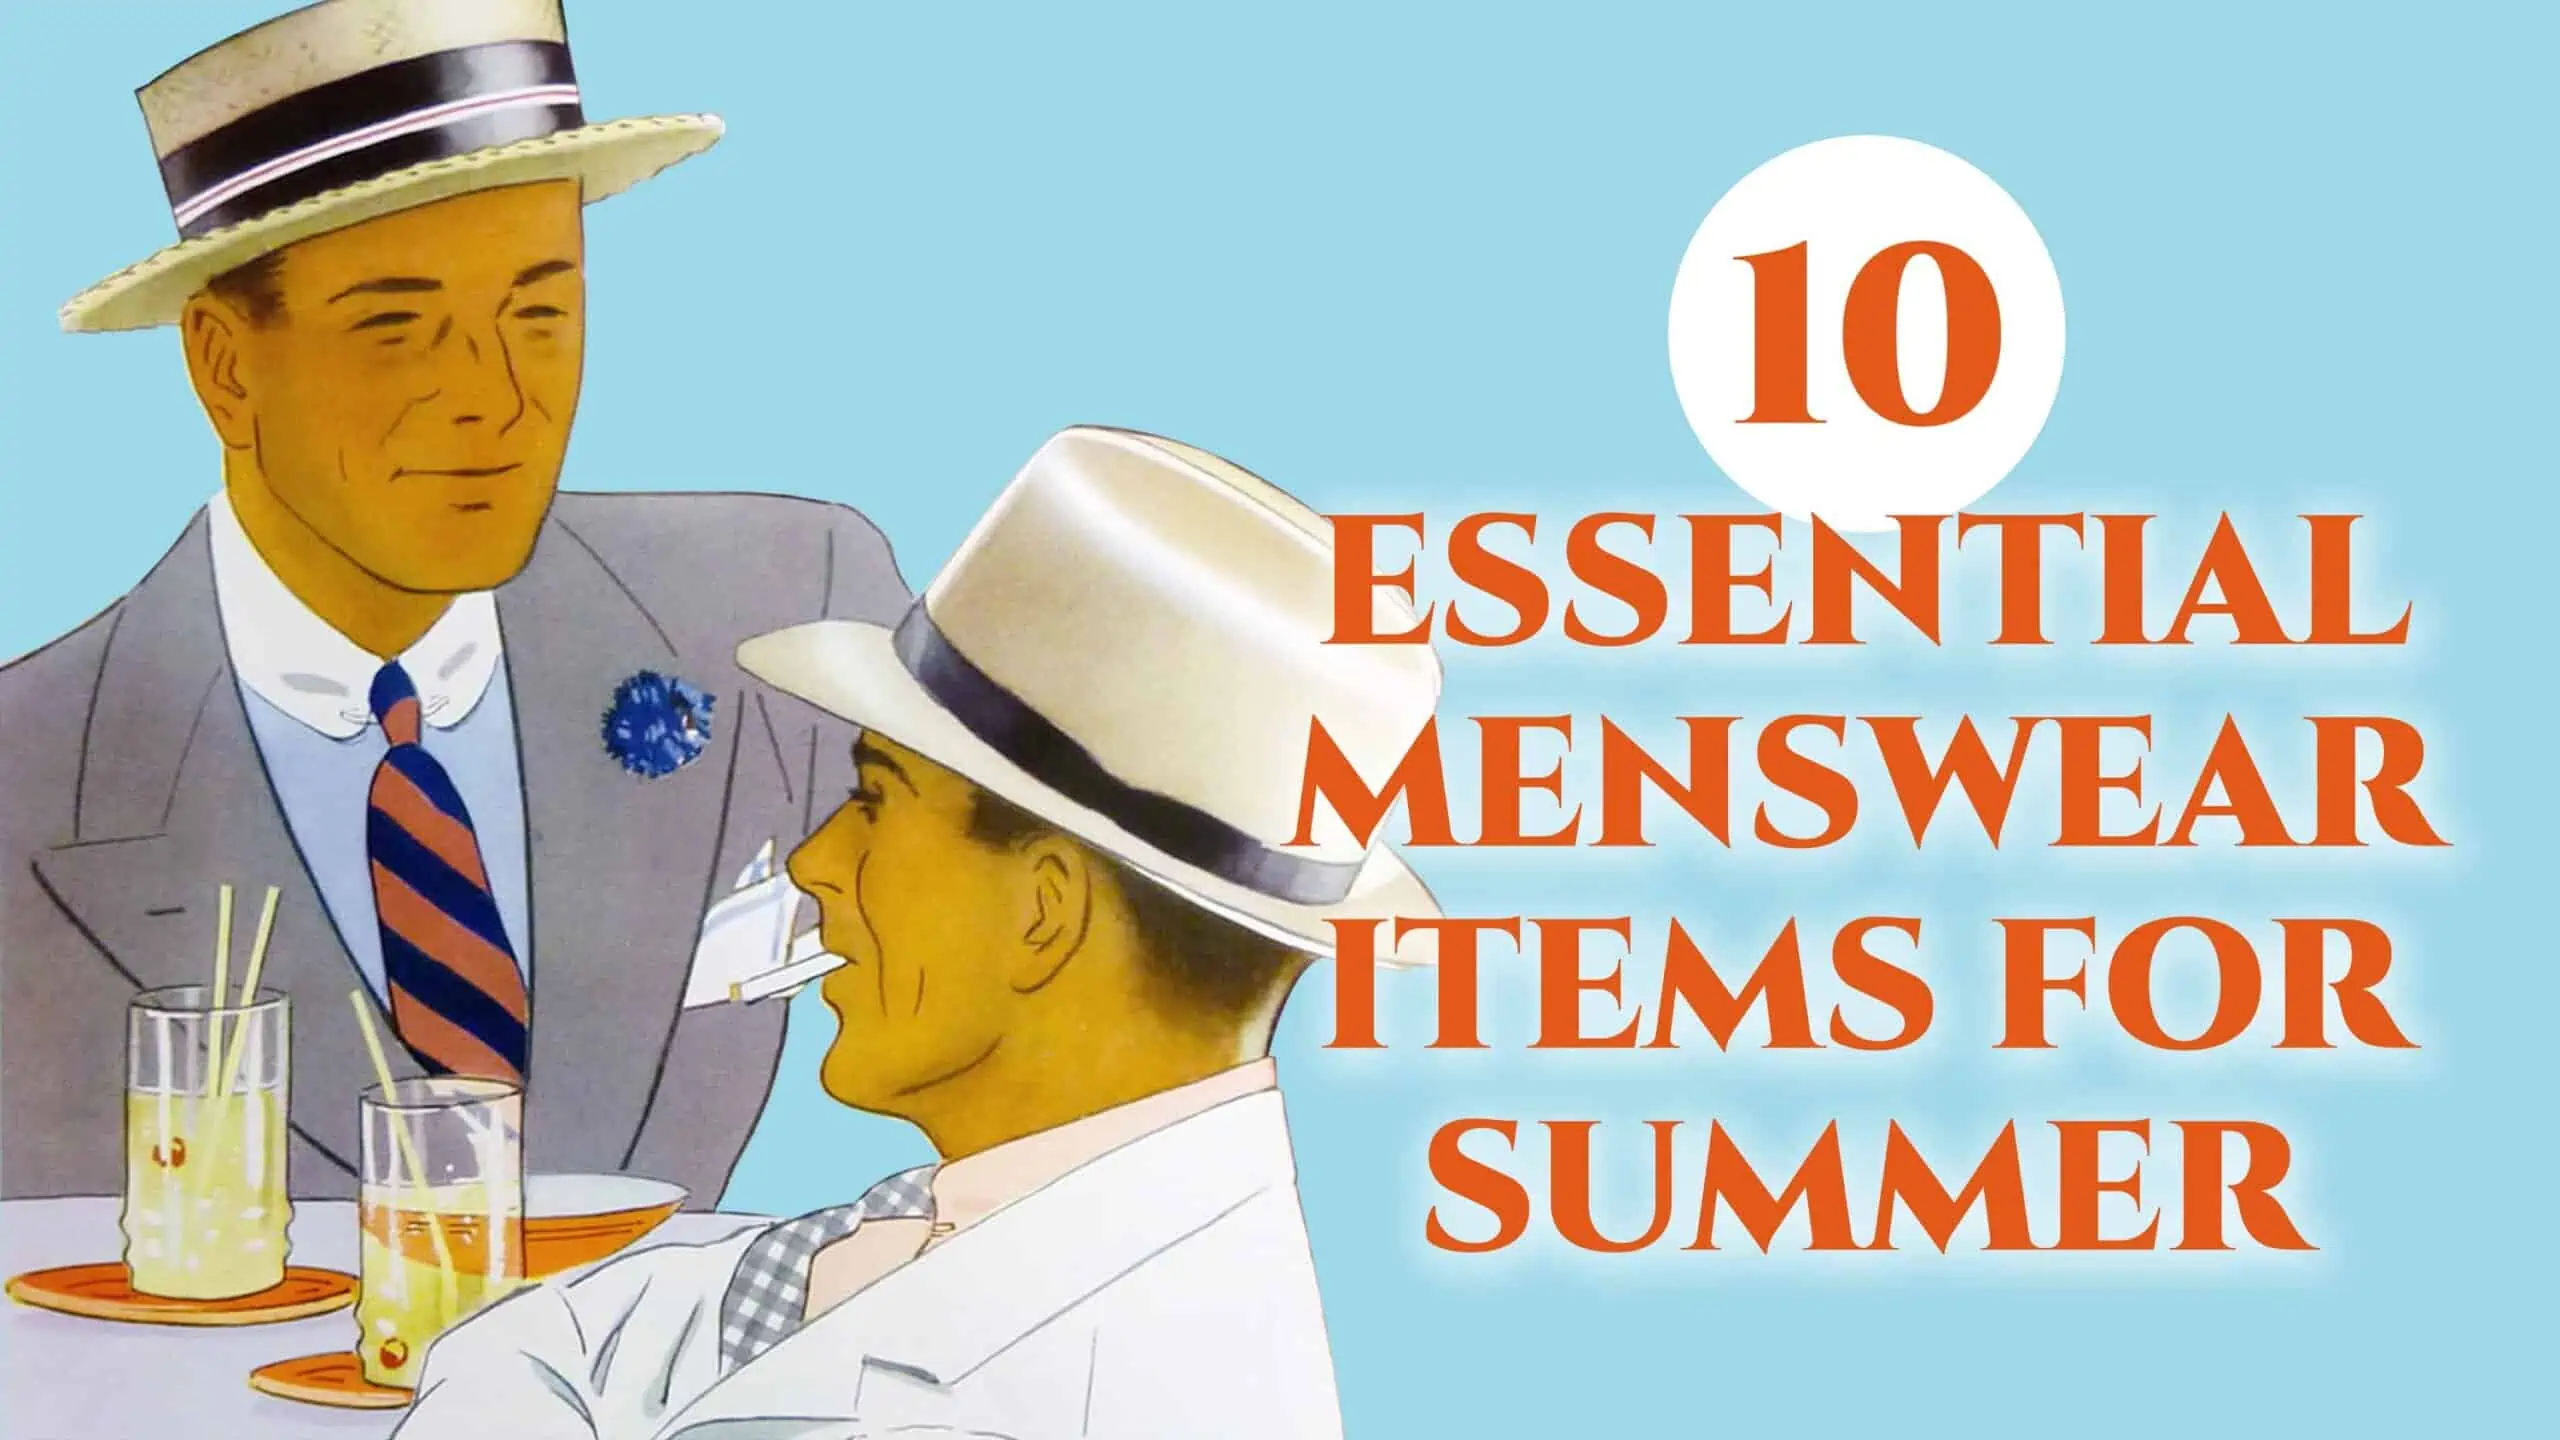 10 essential summer menswear items 3840x2160 scaled